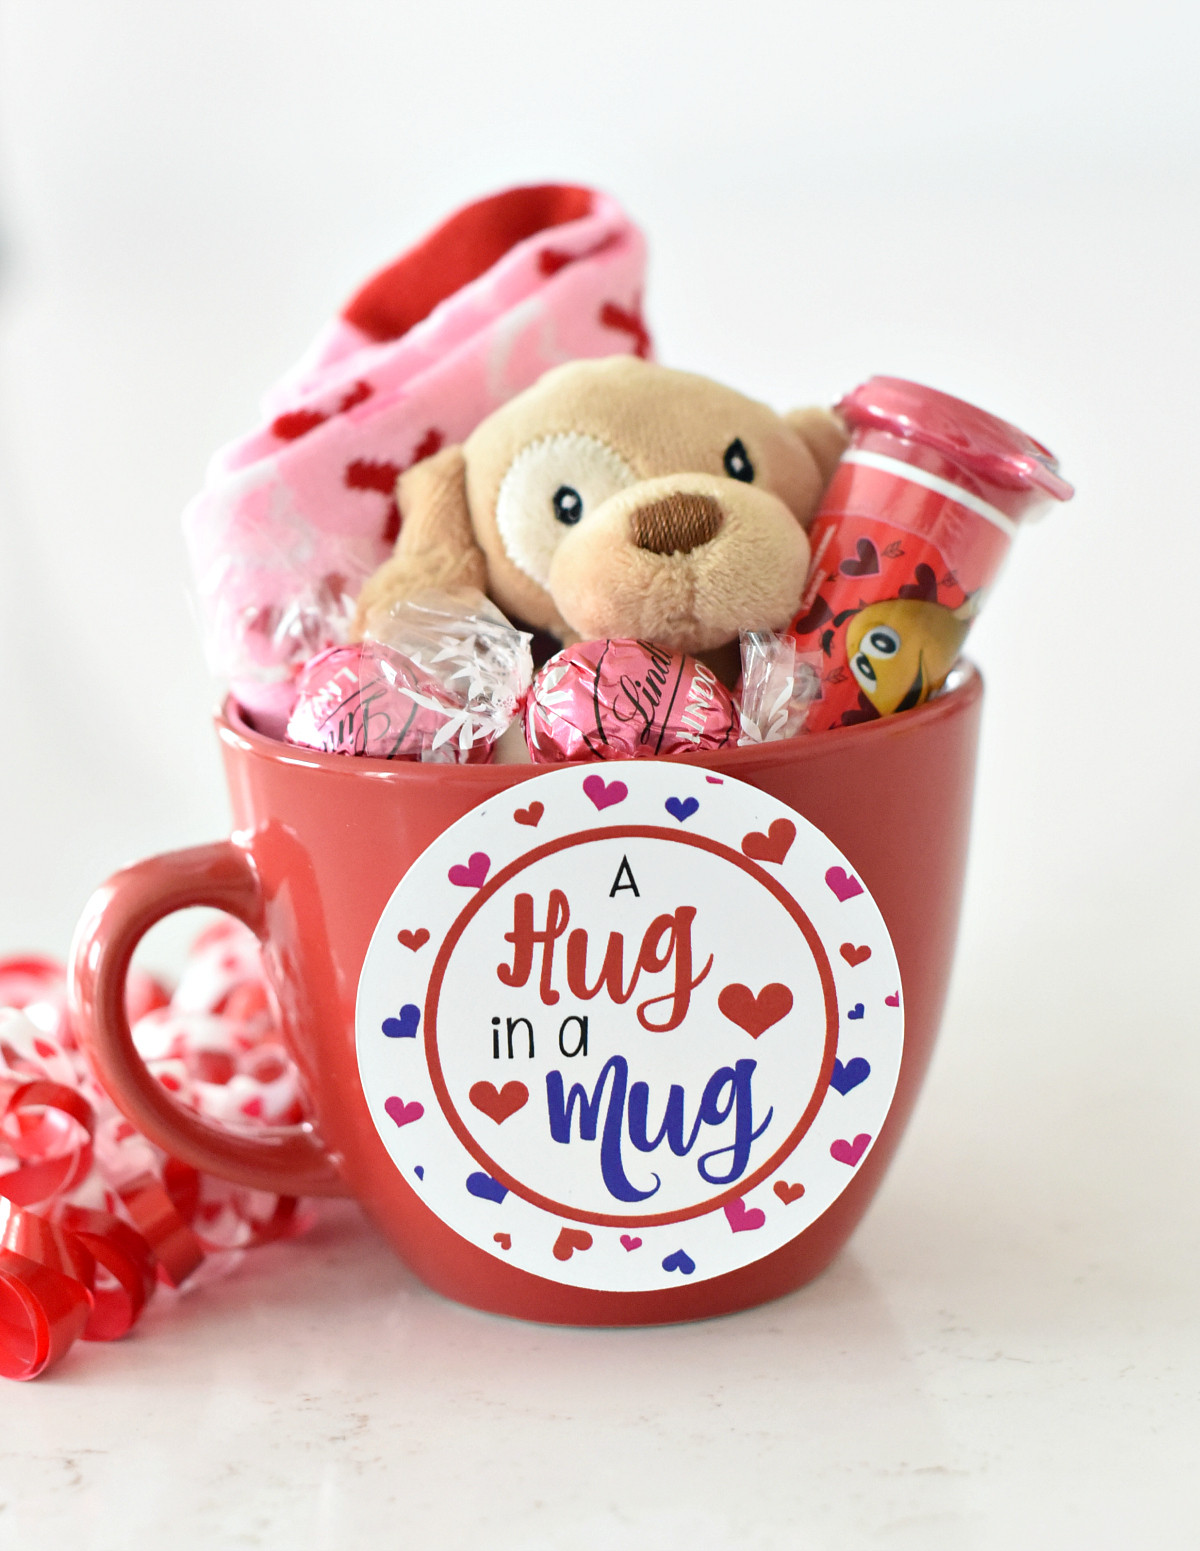 Valentine'S Day Gift Baskets Ideas
 Cute Valentine s Day Gift Idea RED iculous Basket